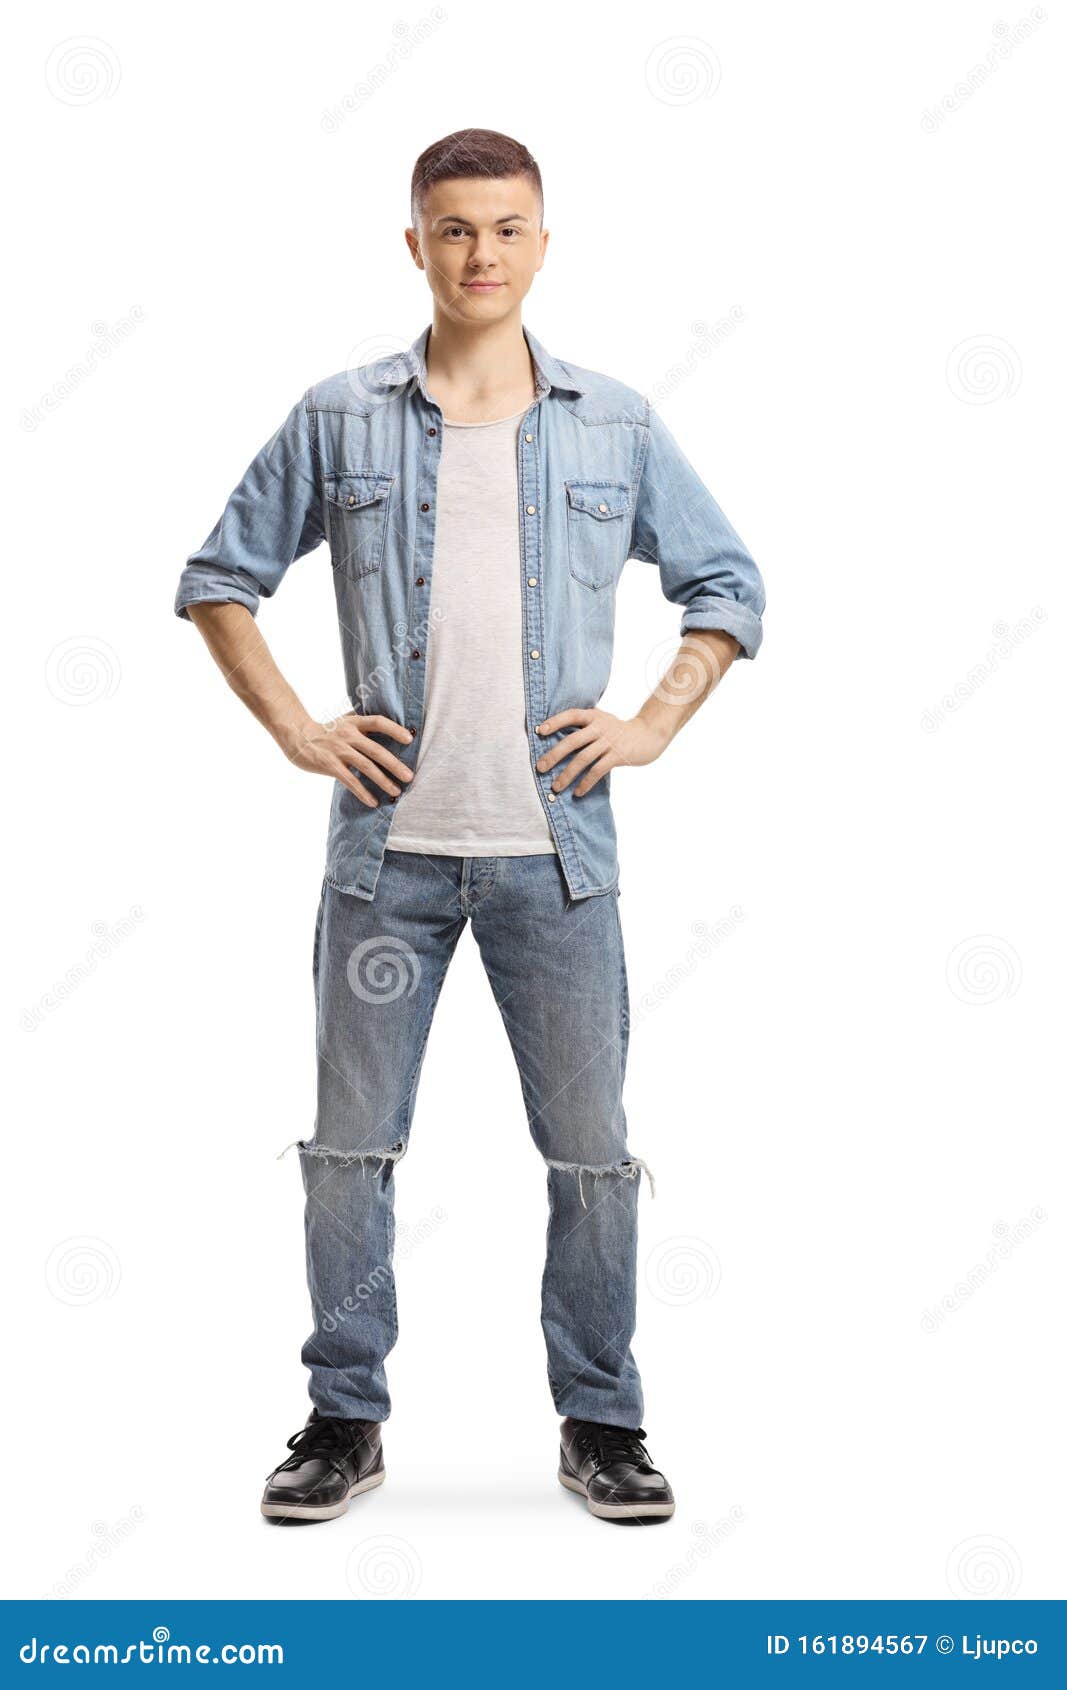 Misschien Lokken zeil Young guy in jeans posing stock image. Image of caucasian - 161894567